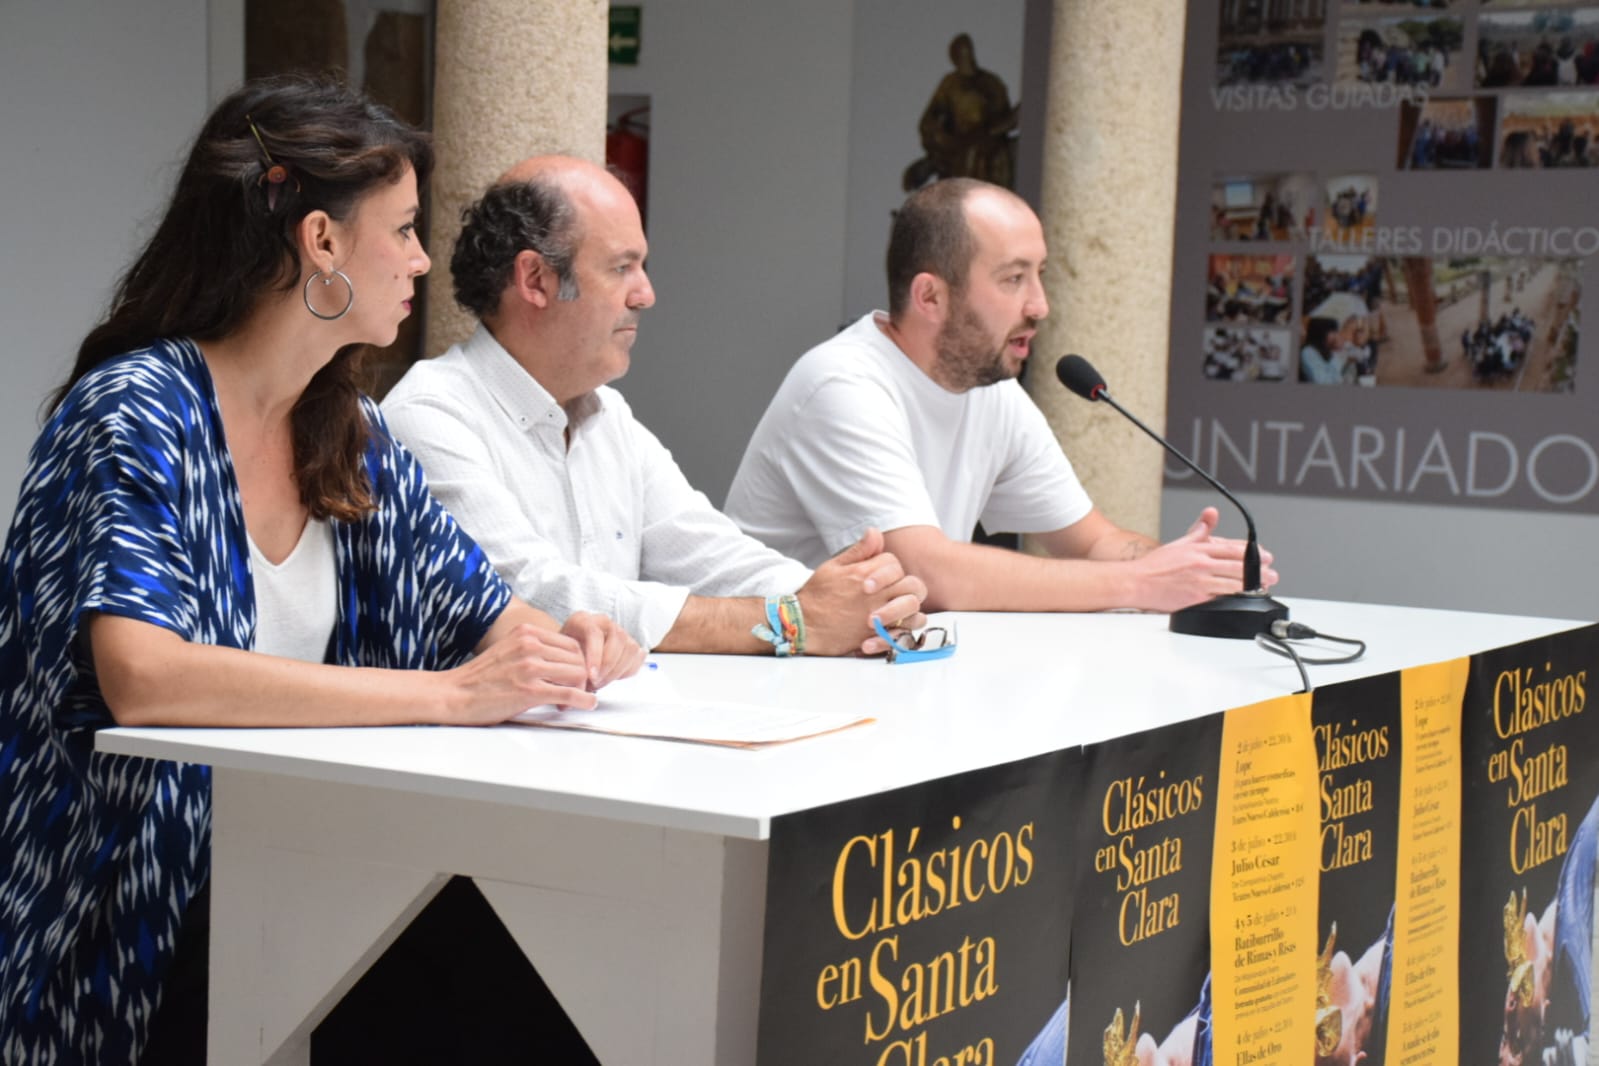 Image 2 of article Siete representaciones teatrales conforman el Festival 'Clásicos en Santa Clara' de Montijo